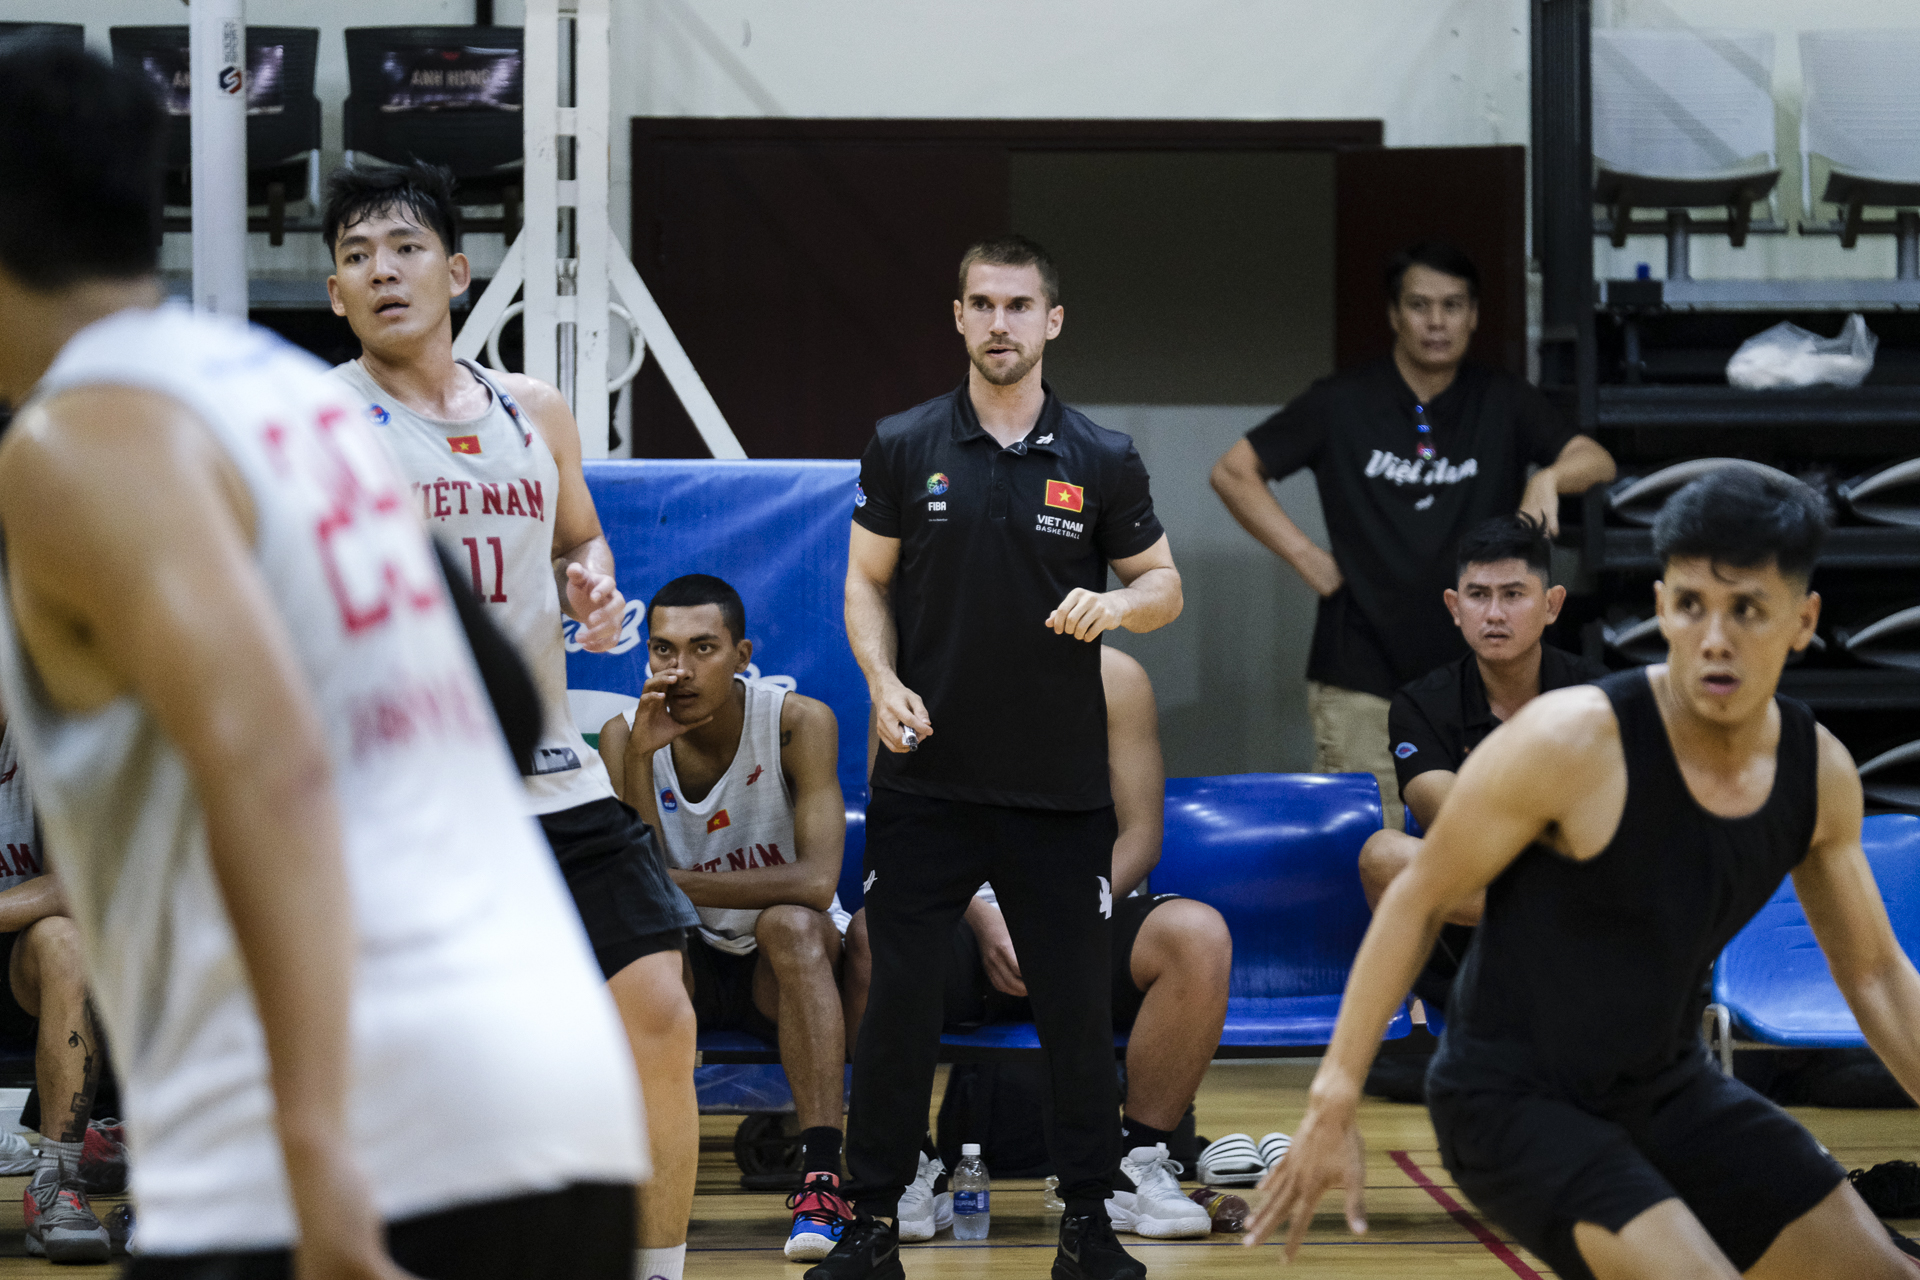 HLV Matt van Pelt lần đầu dẫn dắt tuyển bóng rổ Việt Nam: 'Tôi nghĩ về cơ hội nhiều hơn áp lực' - Ảnh 1.